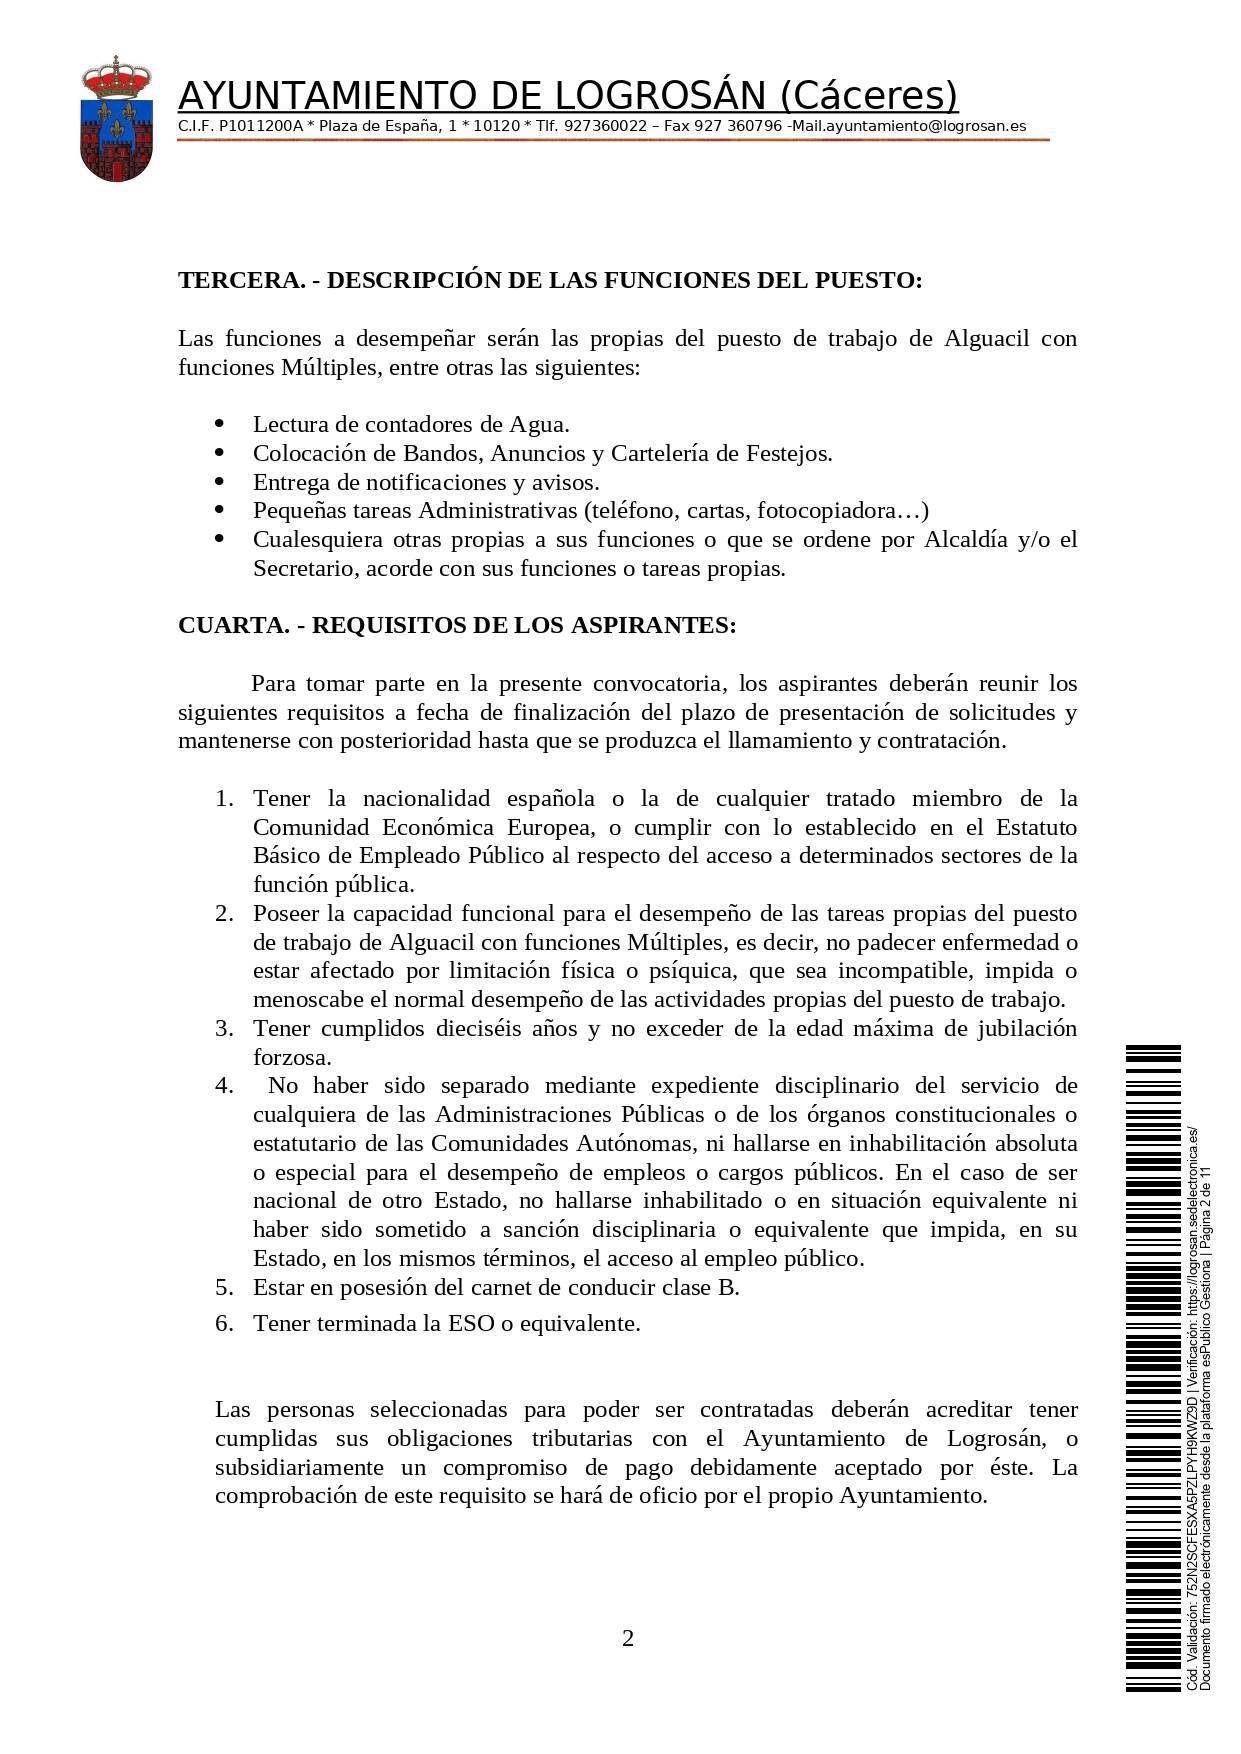 Bolsa de una alguacil (2021) - Logrosán (Cáceres) 2